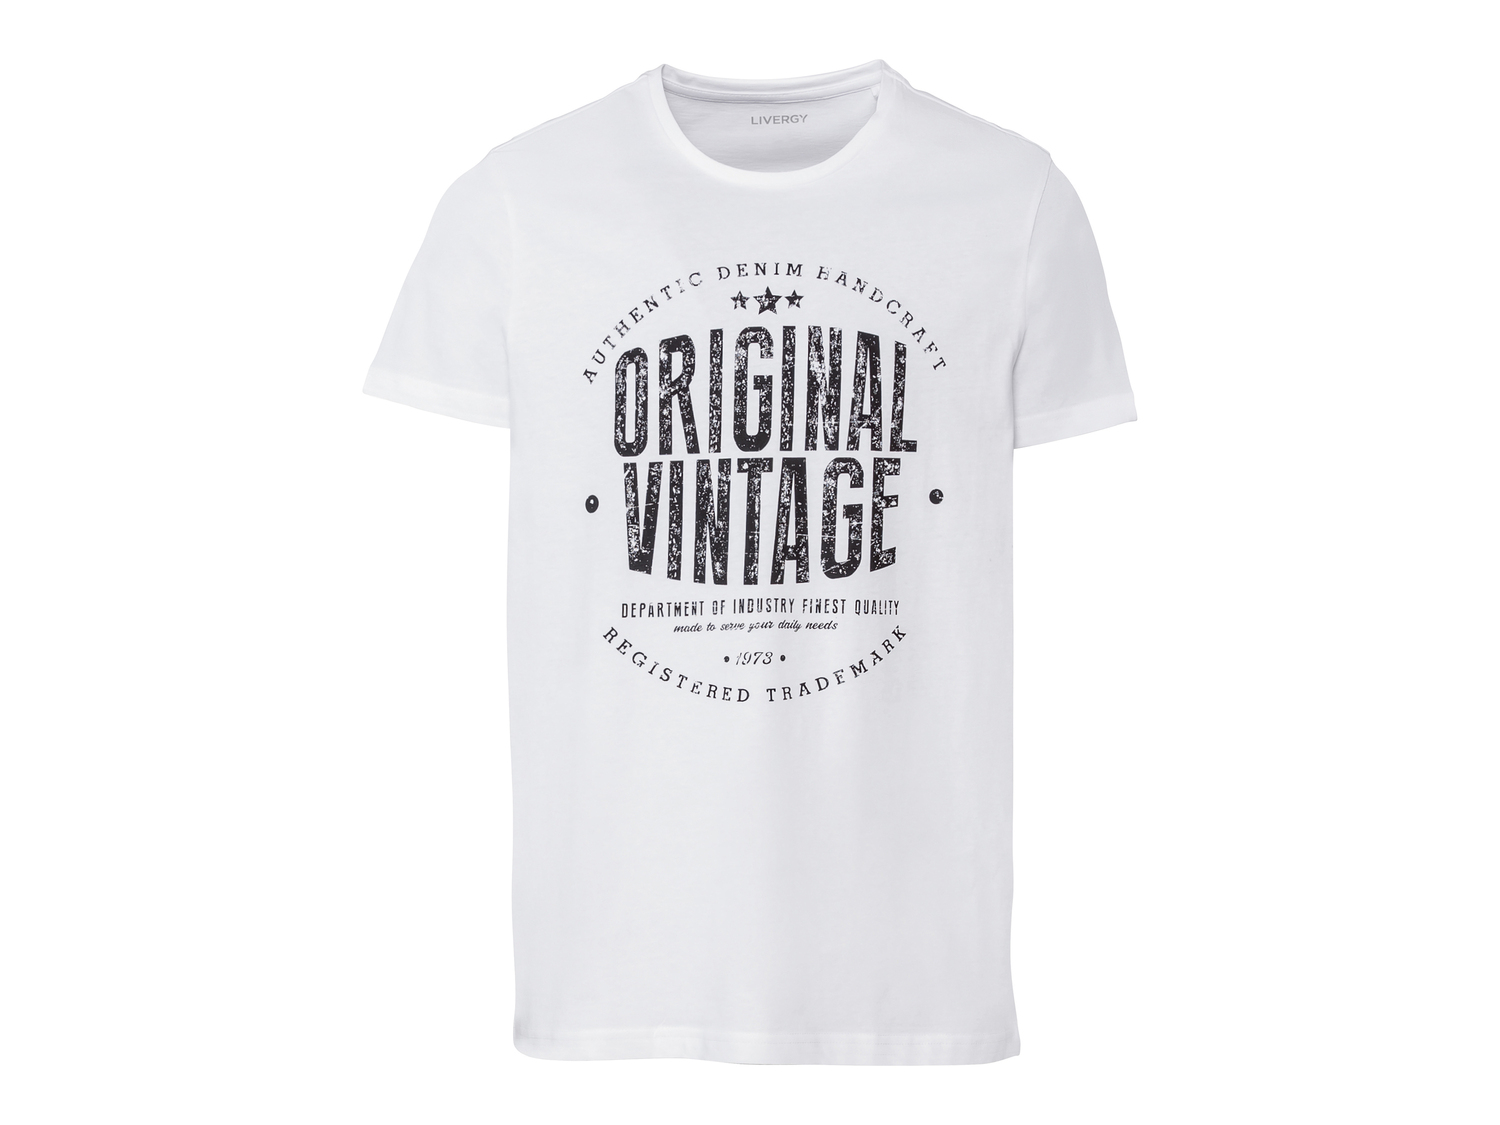 T-shirt da uomo Livergy, prezzo 3.99 &#8364; 
Misure: S-XL
Taglie disponibili

Caratteristiche

- ...